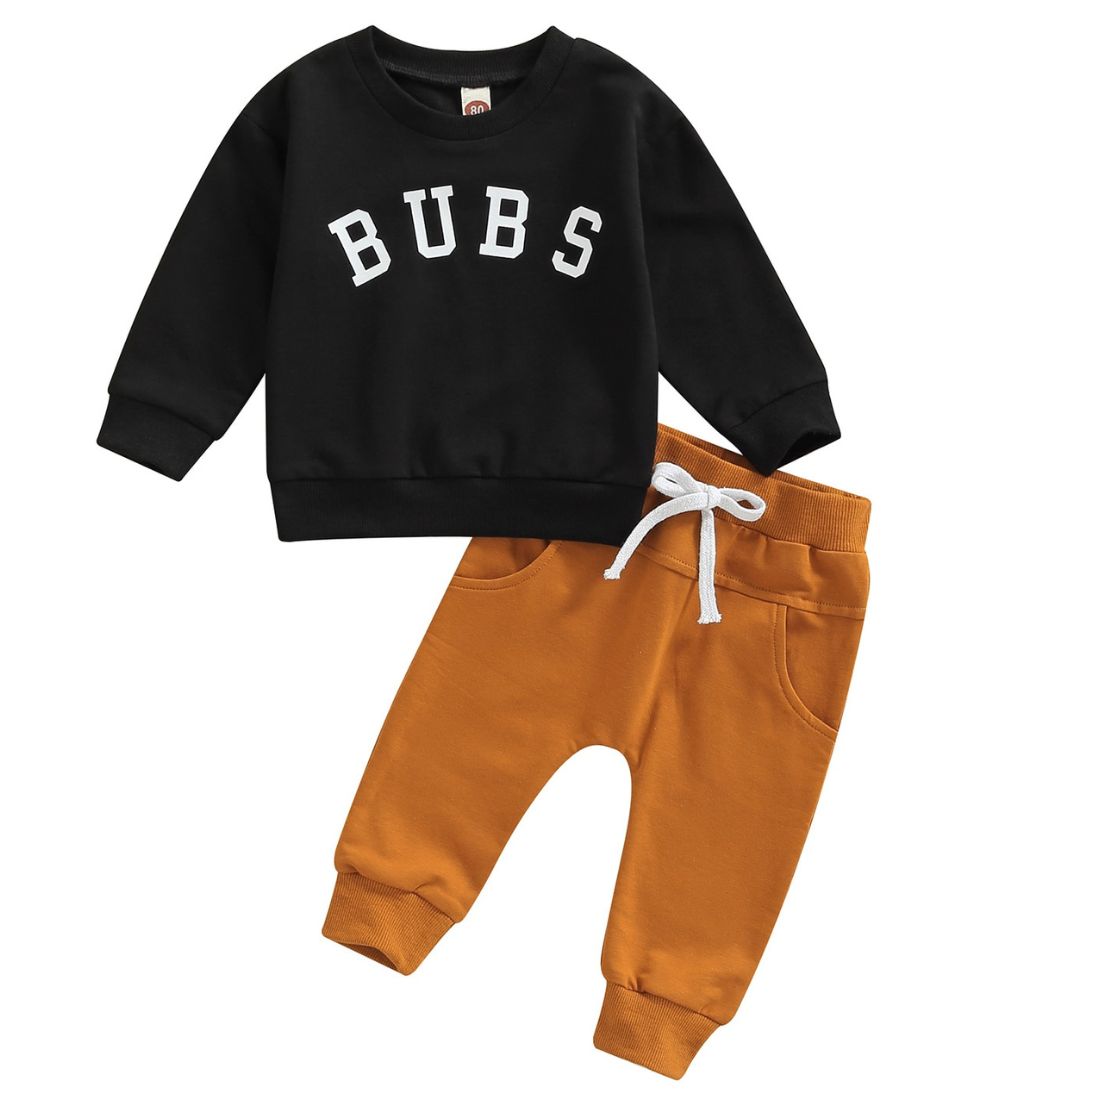 Bubs Sweaty Baby Boy Clothing Set